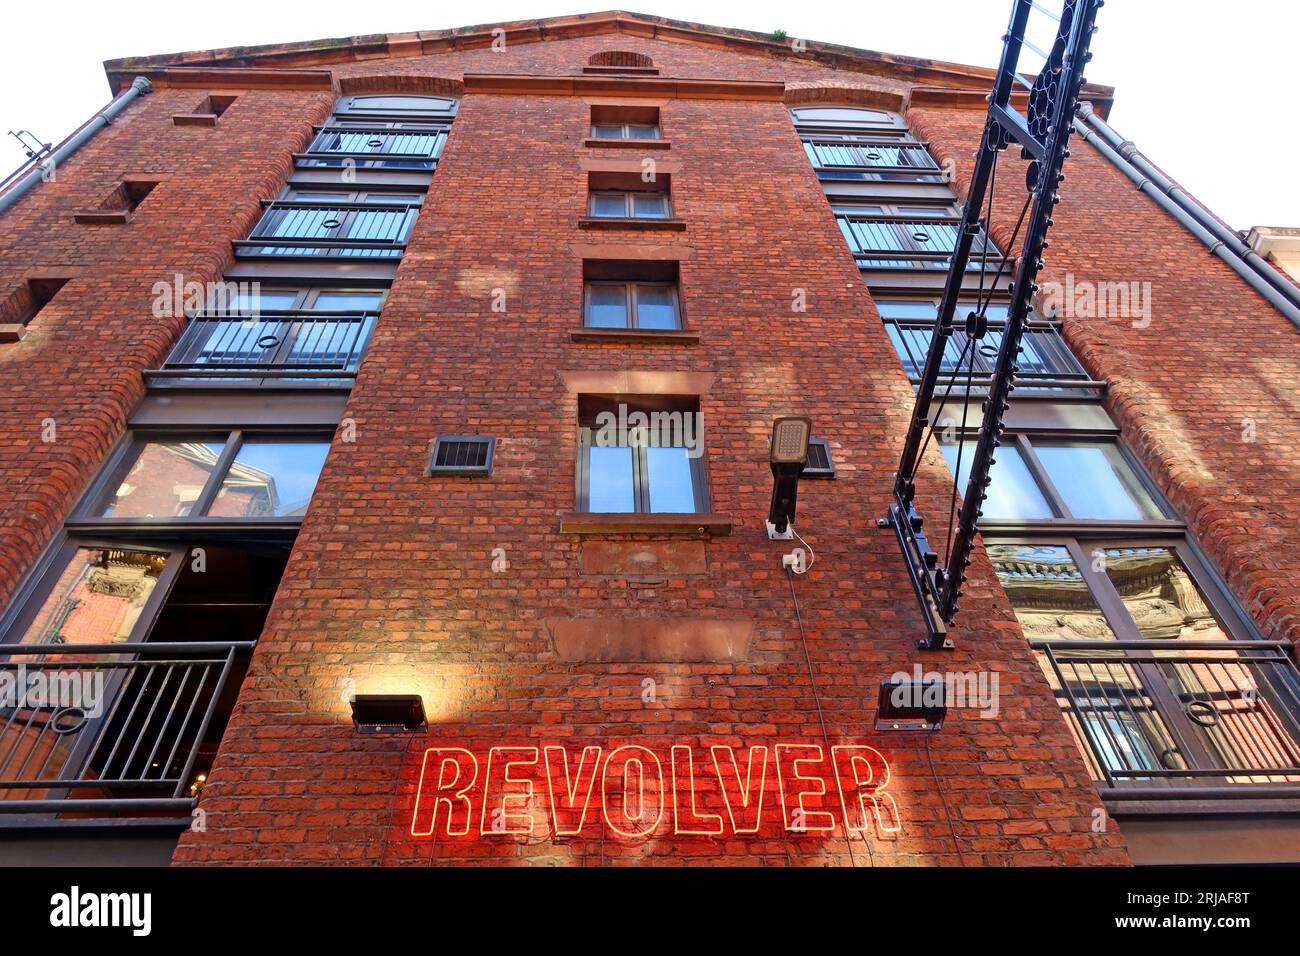 Revolver bar, che prende il nome da un album dei Beatles, 2 Temple CT, Cavern Quarter, Liverpool, Merseyside, INGHILTERRA, REGNO UNITO, L2 6PY Foto Stock